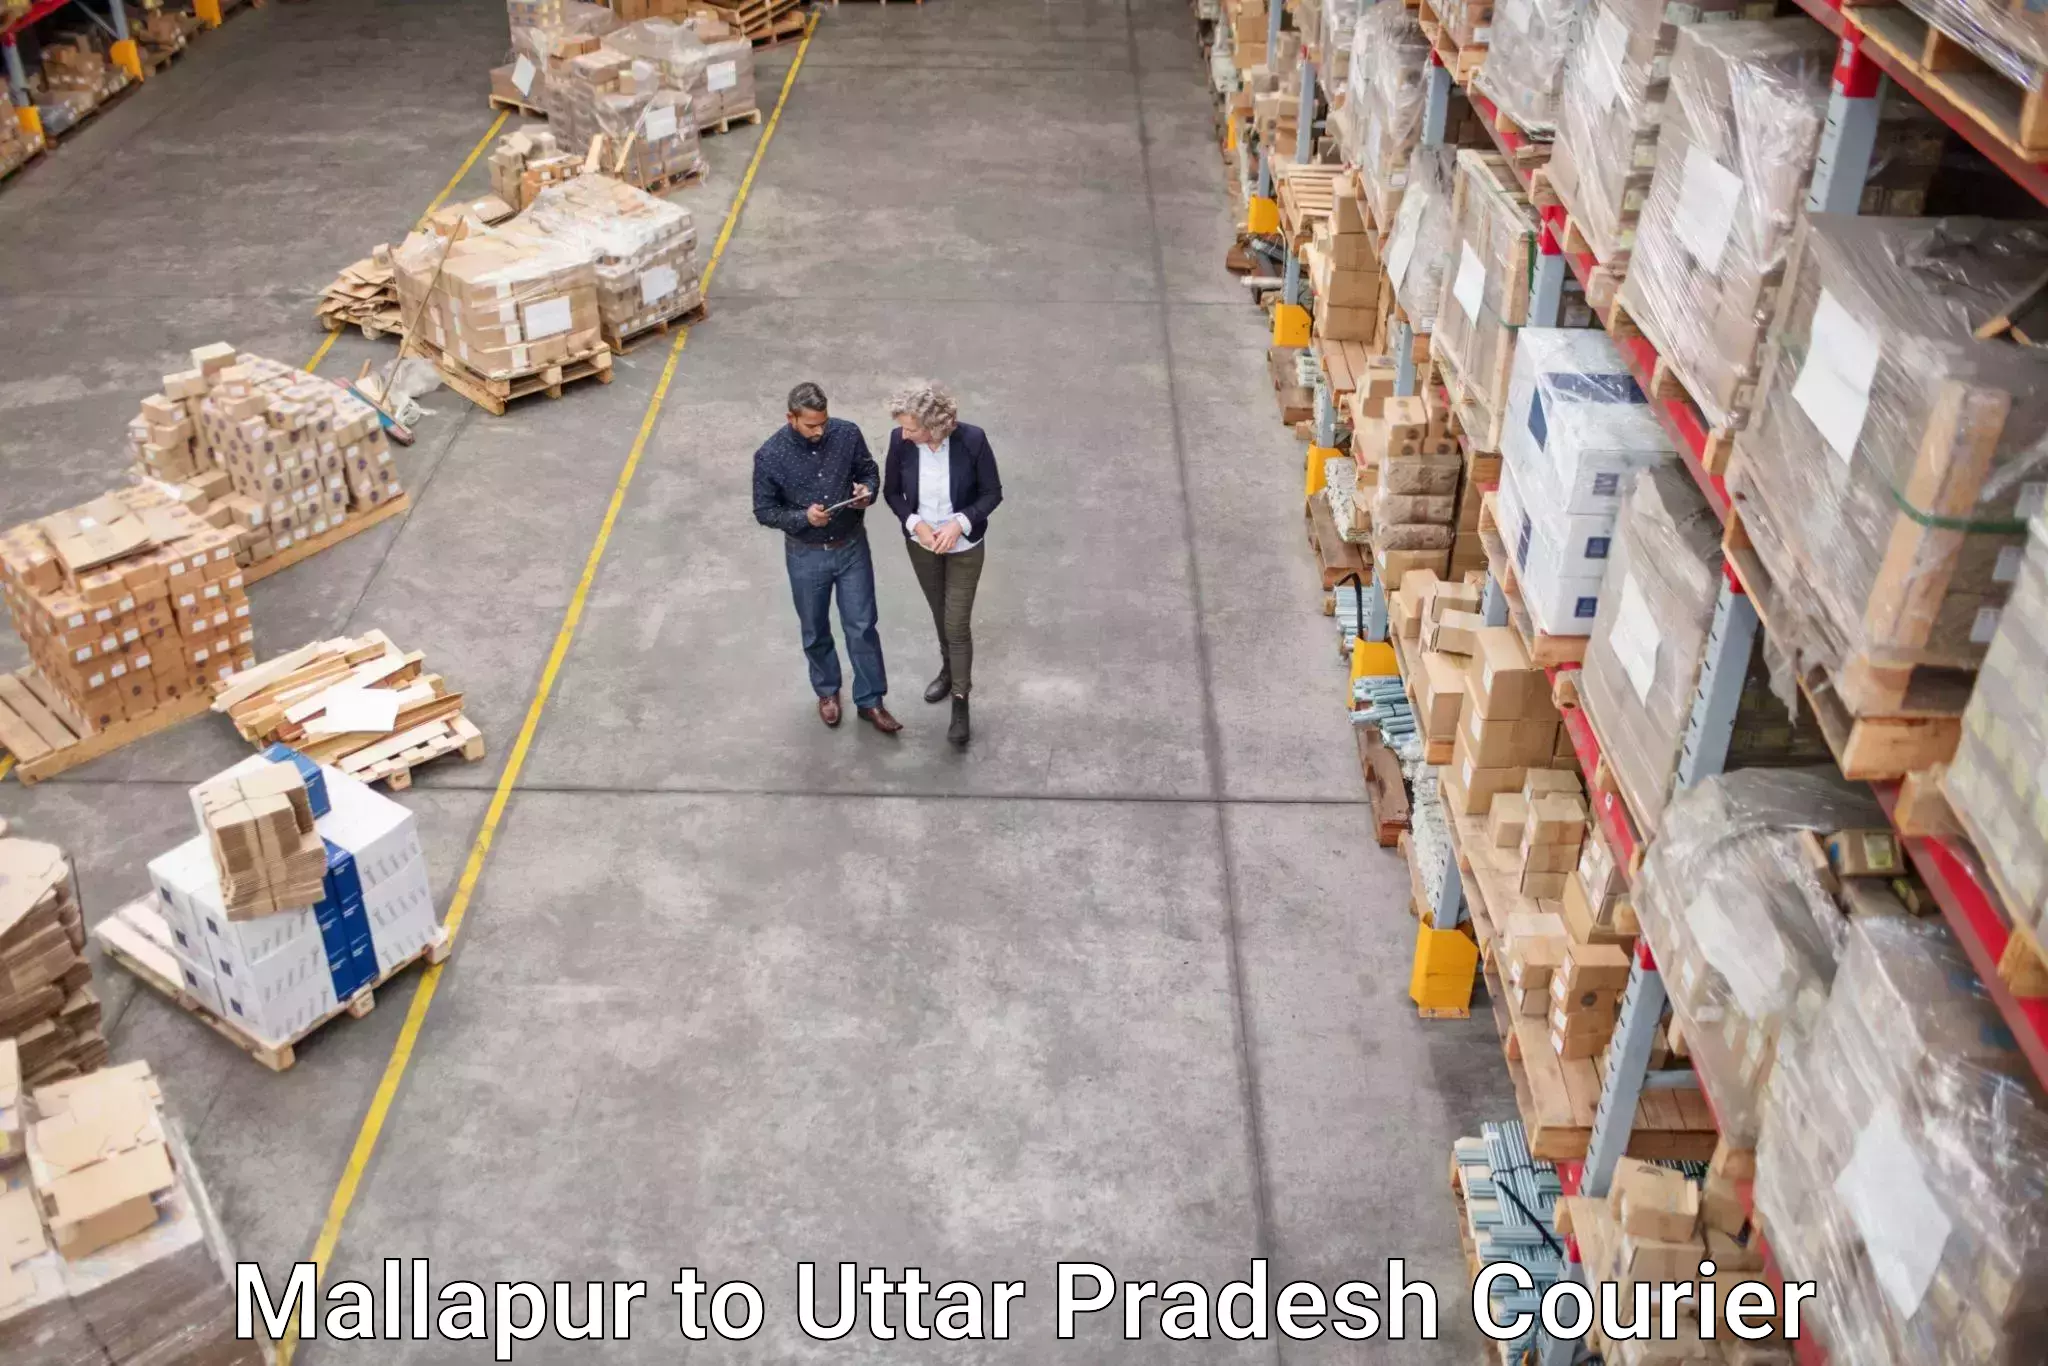 Urban courier service Mallapur to Bahraich